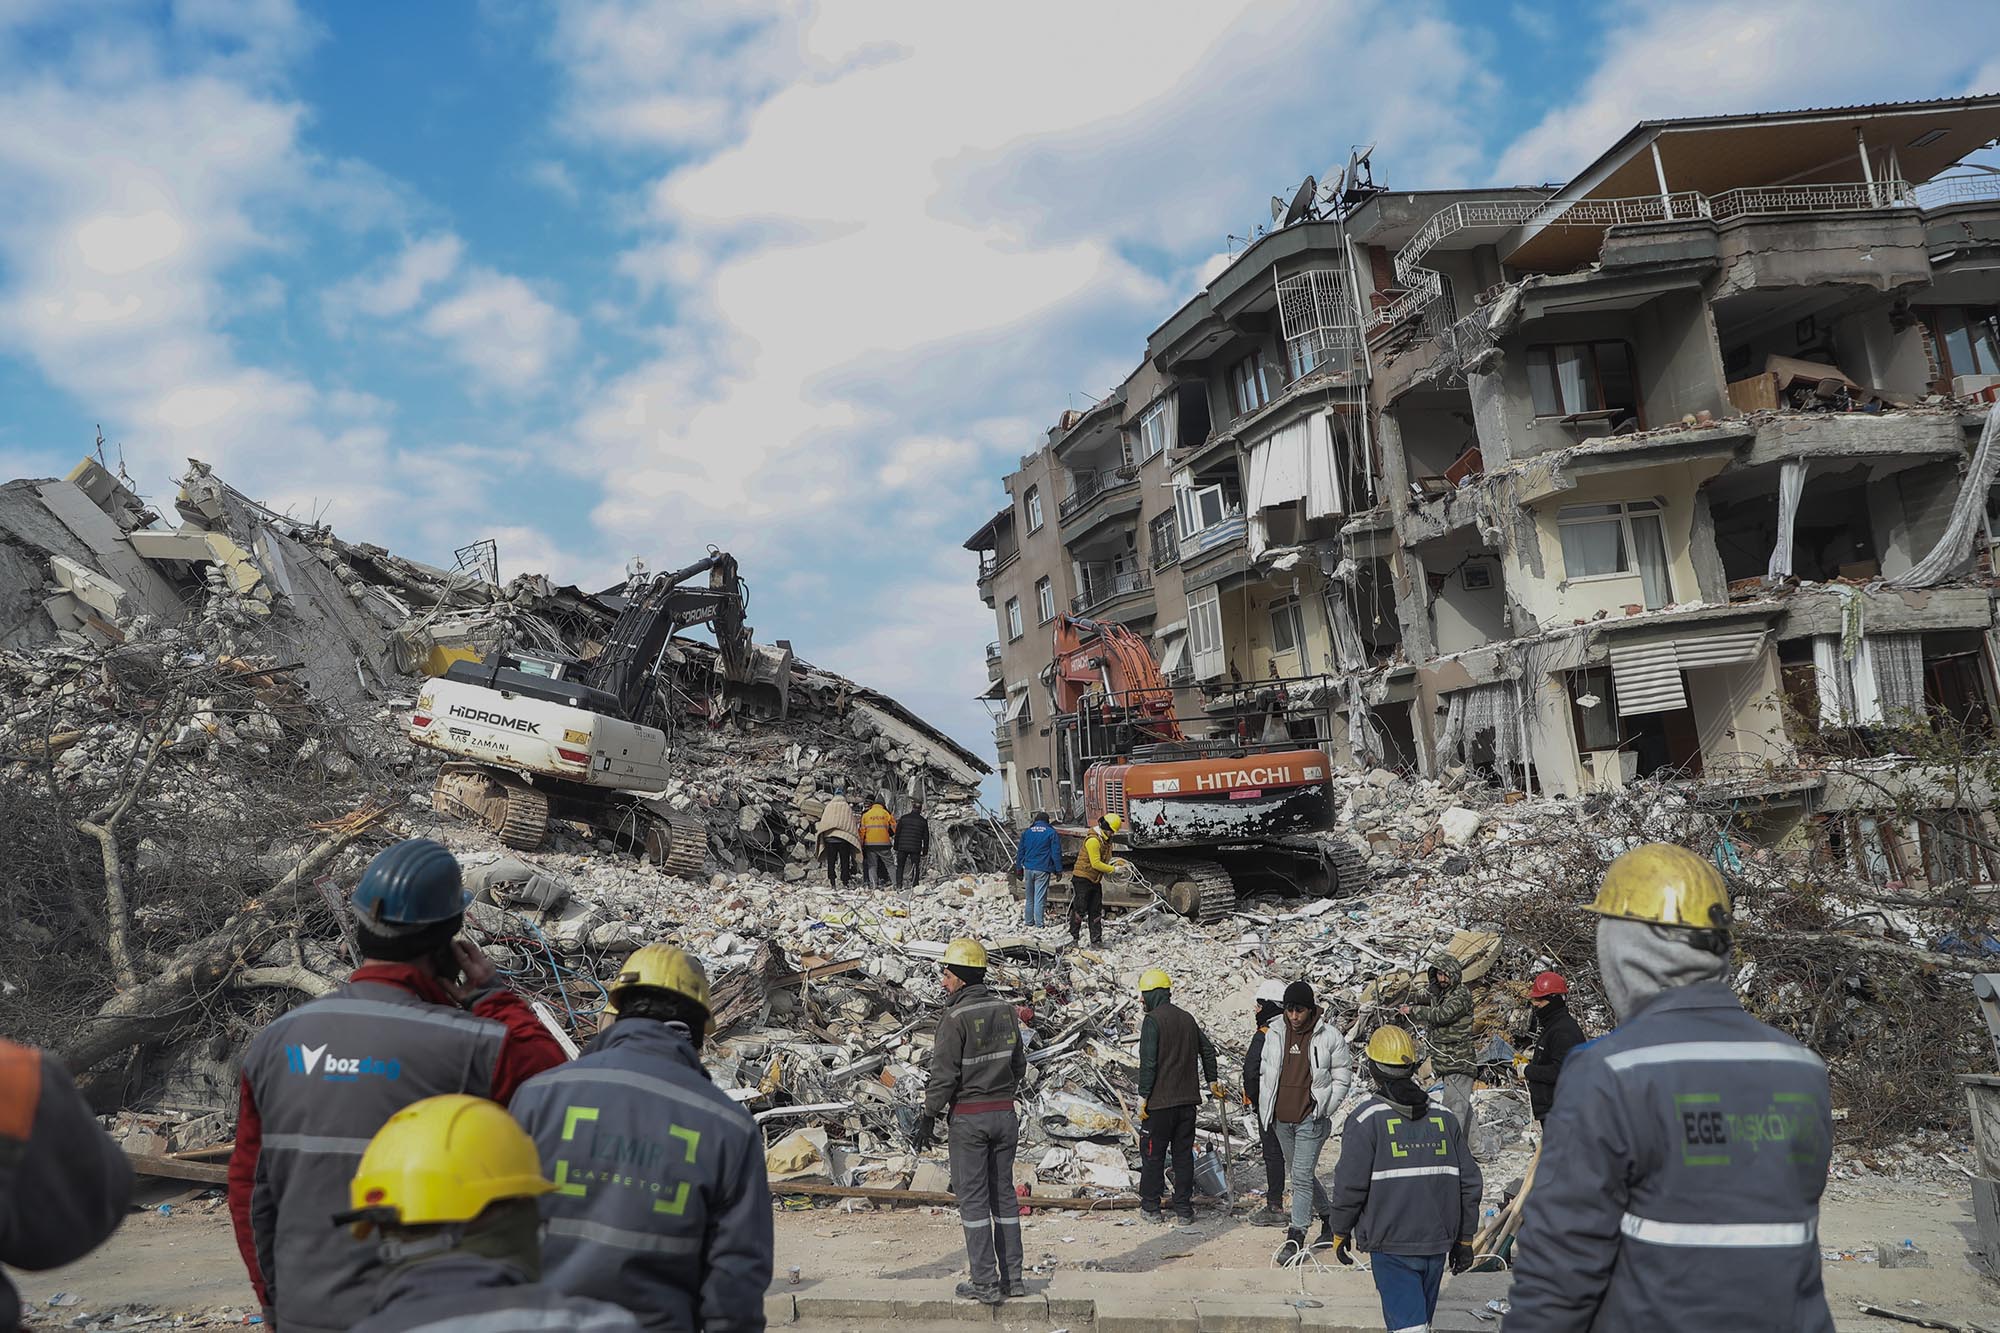 Máy móc hạng nặng làm việc trên đống đổ nát của một tòa nhà bị sập ở Hatay, Thổ Nhĩ Kỳ, ngày 11/2.